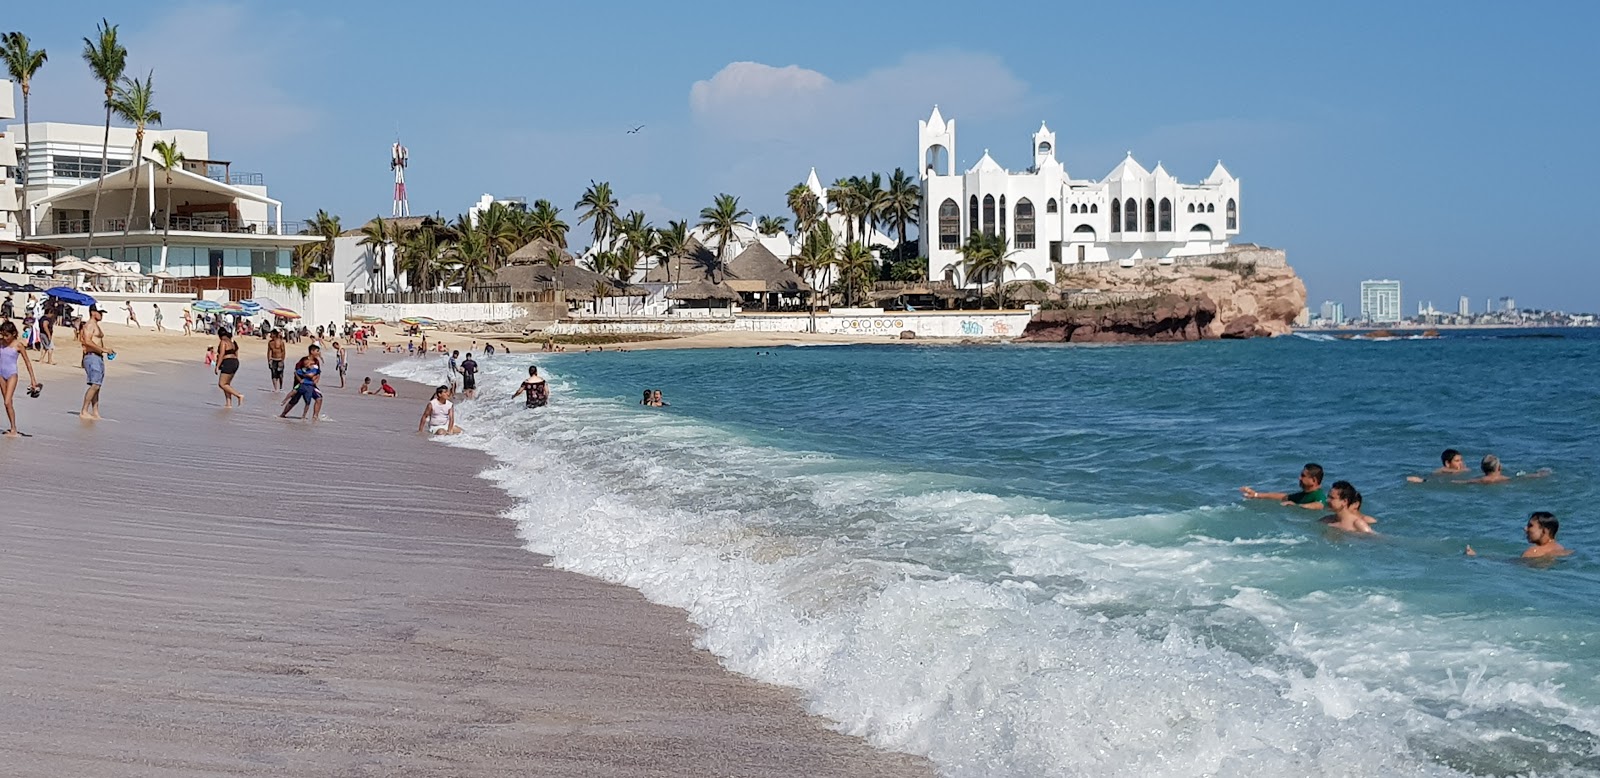 Foto de Gaviotas beach - lugar popular entre os apreciadores de relaxamento